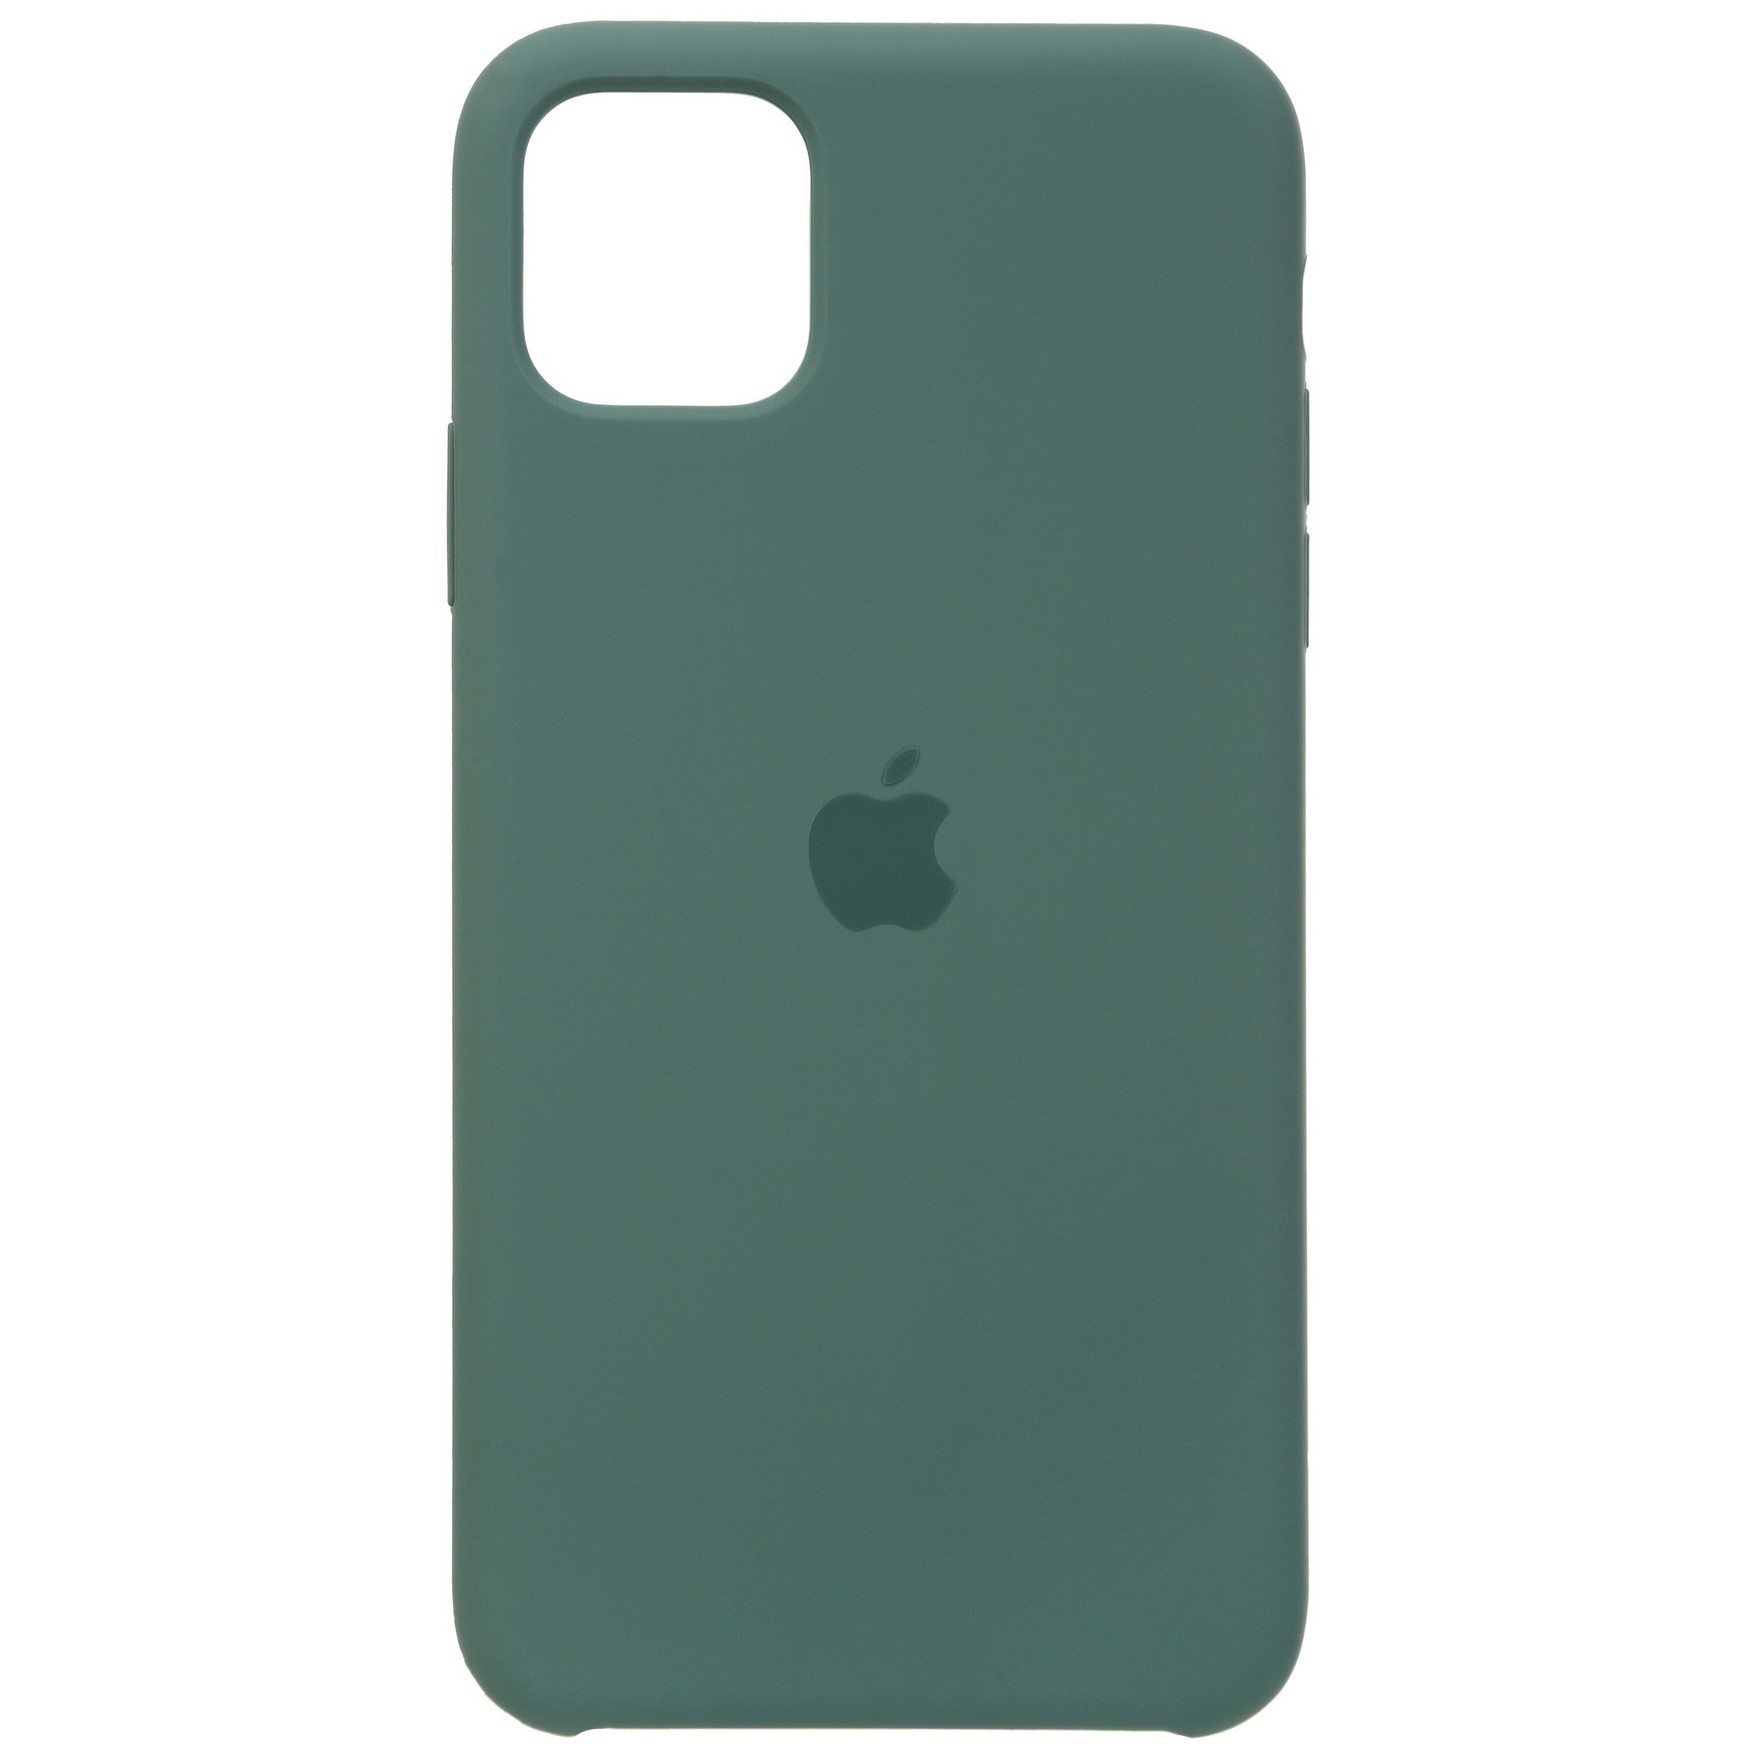 Чехлы для мобильных телефонов ArmorStandart Silicone Case for iPhone 11 Pro (оранжевый)